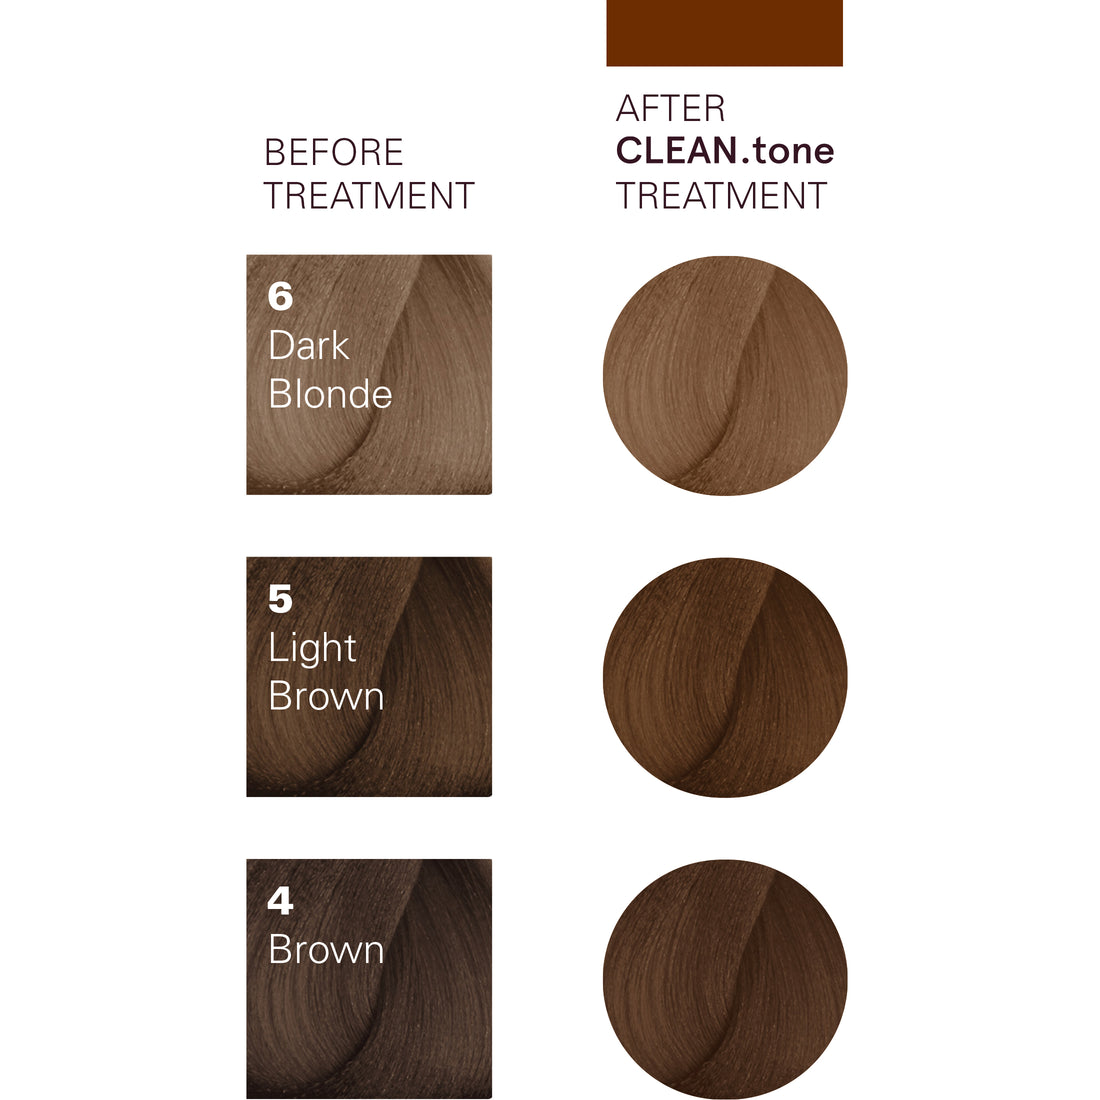 O&M CLEAN.tone Chocolate Colour Treatment 200ml